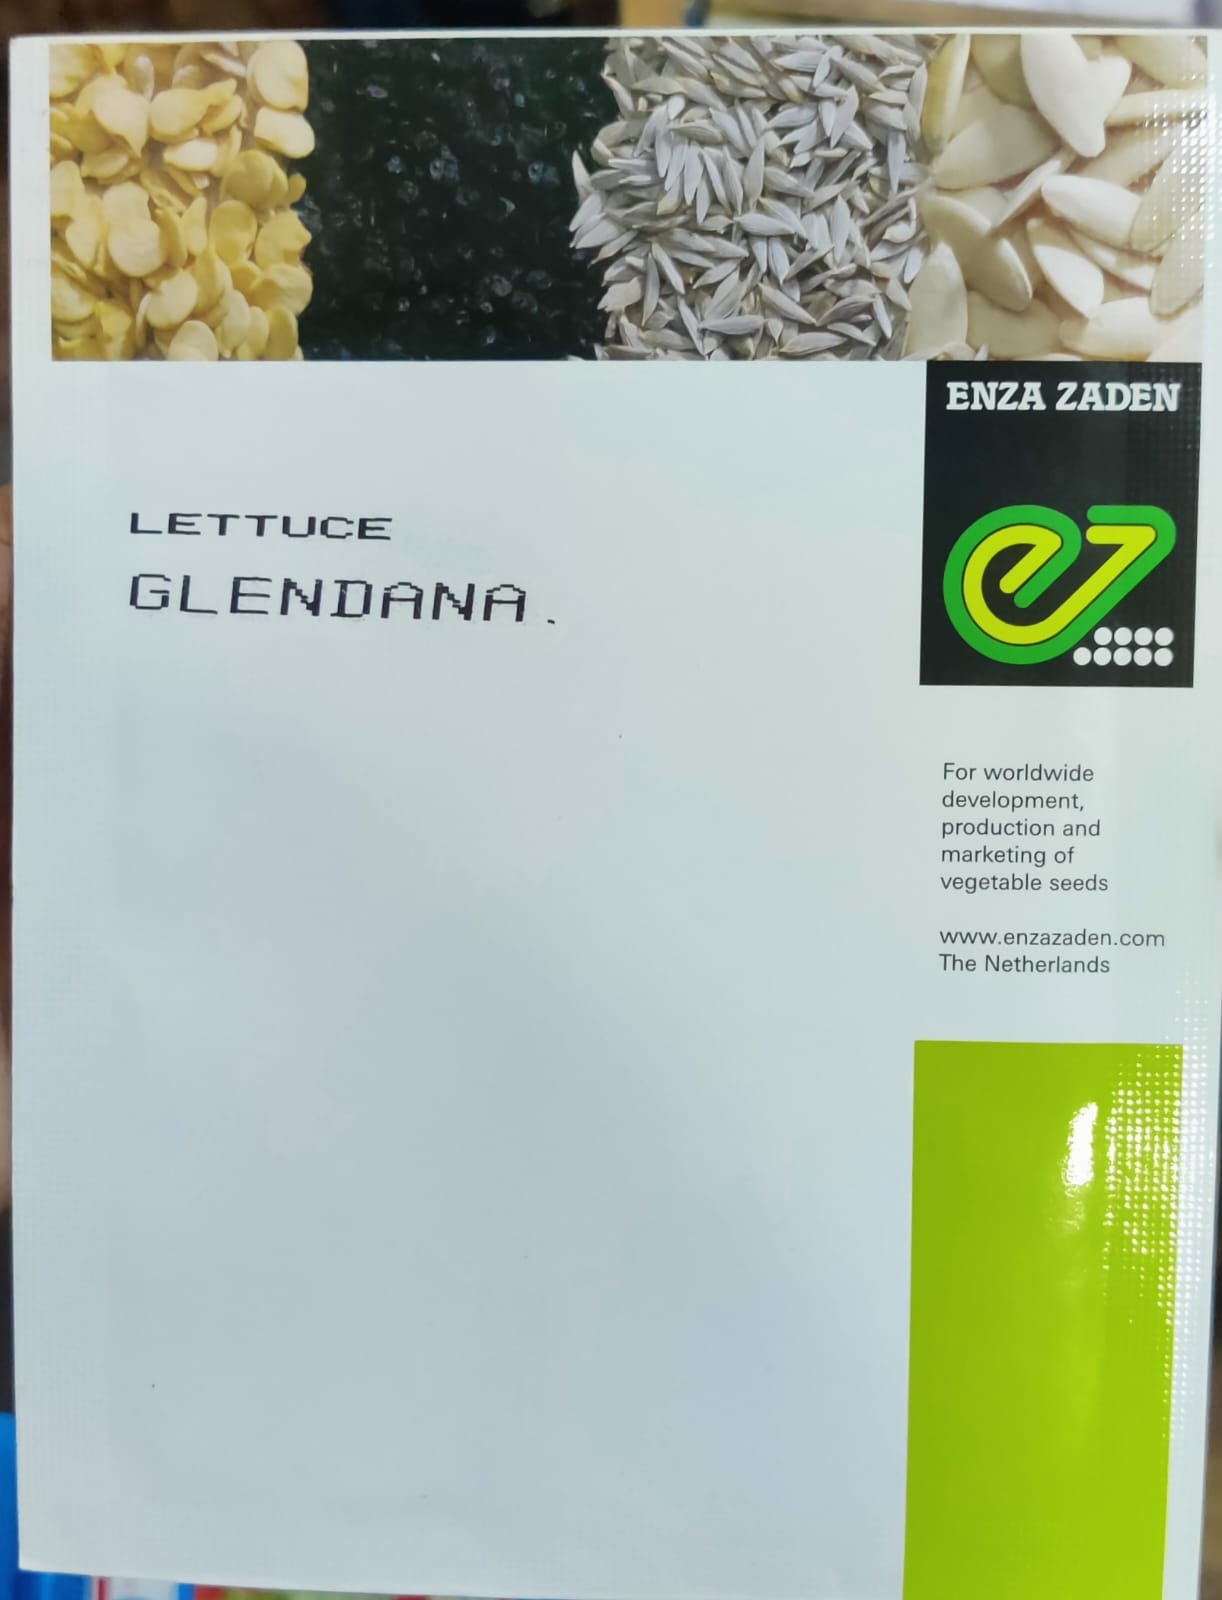 Lettuce Glendana (Enza Zaden)